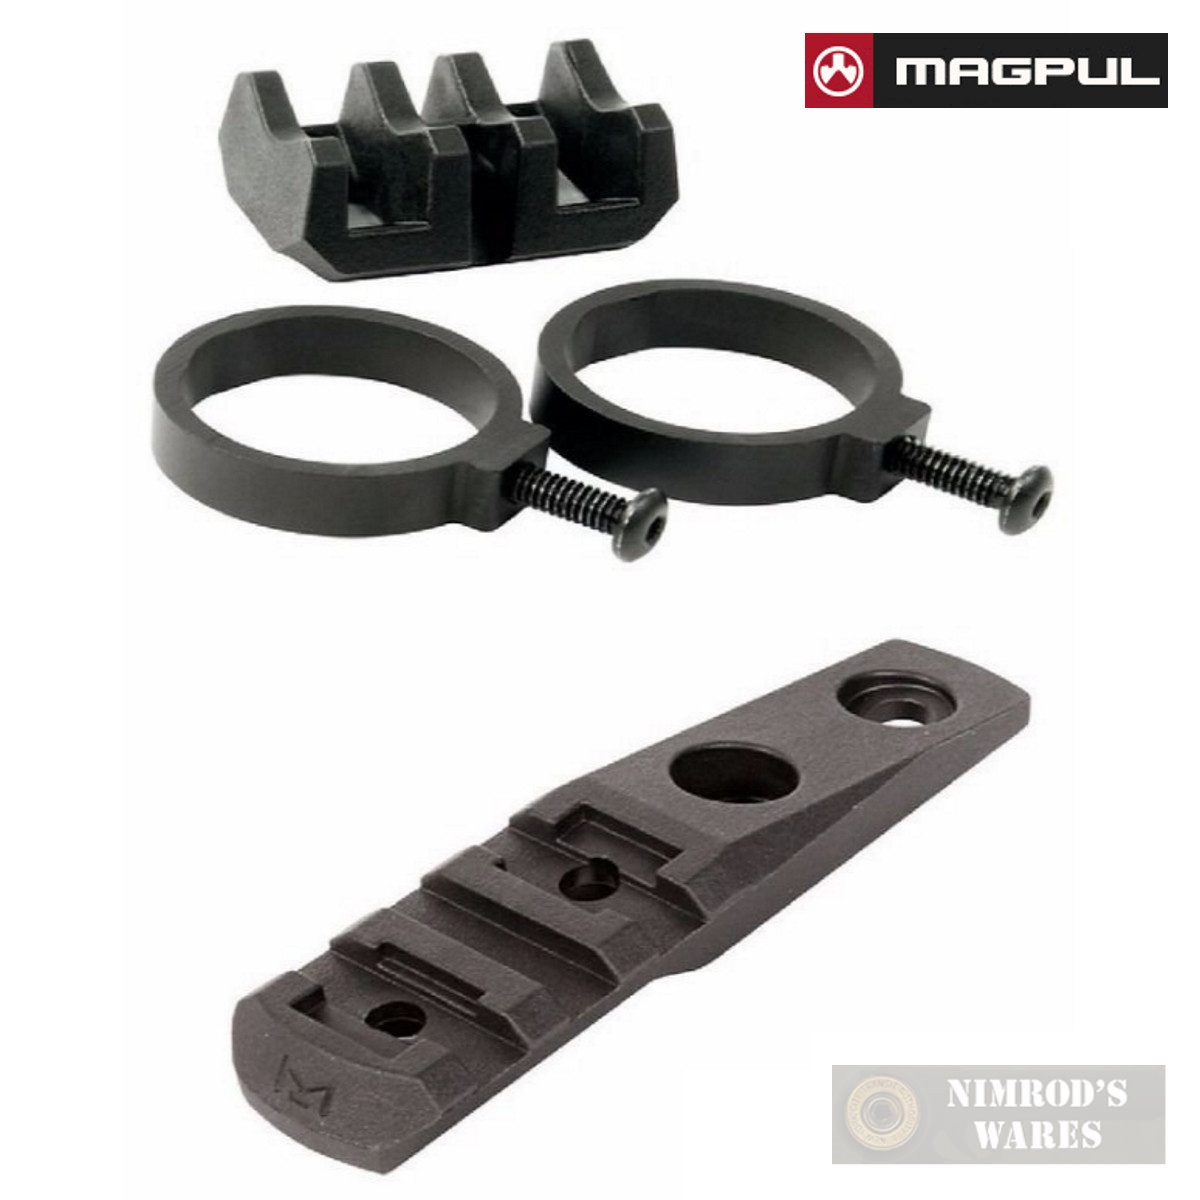 Magpul Polymer & Aluminum Light Mounts-MAG498-MAG587-MAG588-MAG604-MAG605-MAG614